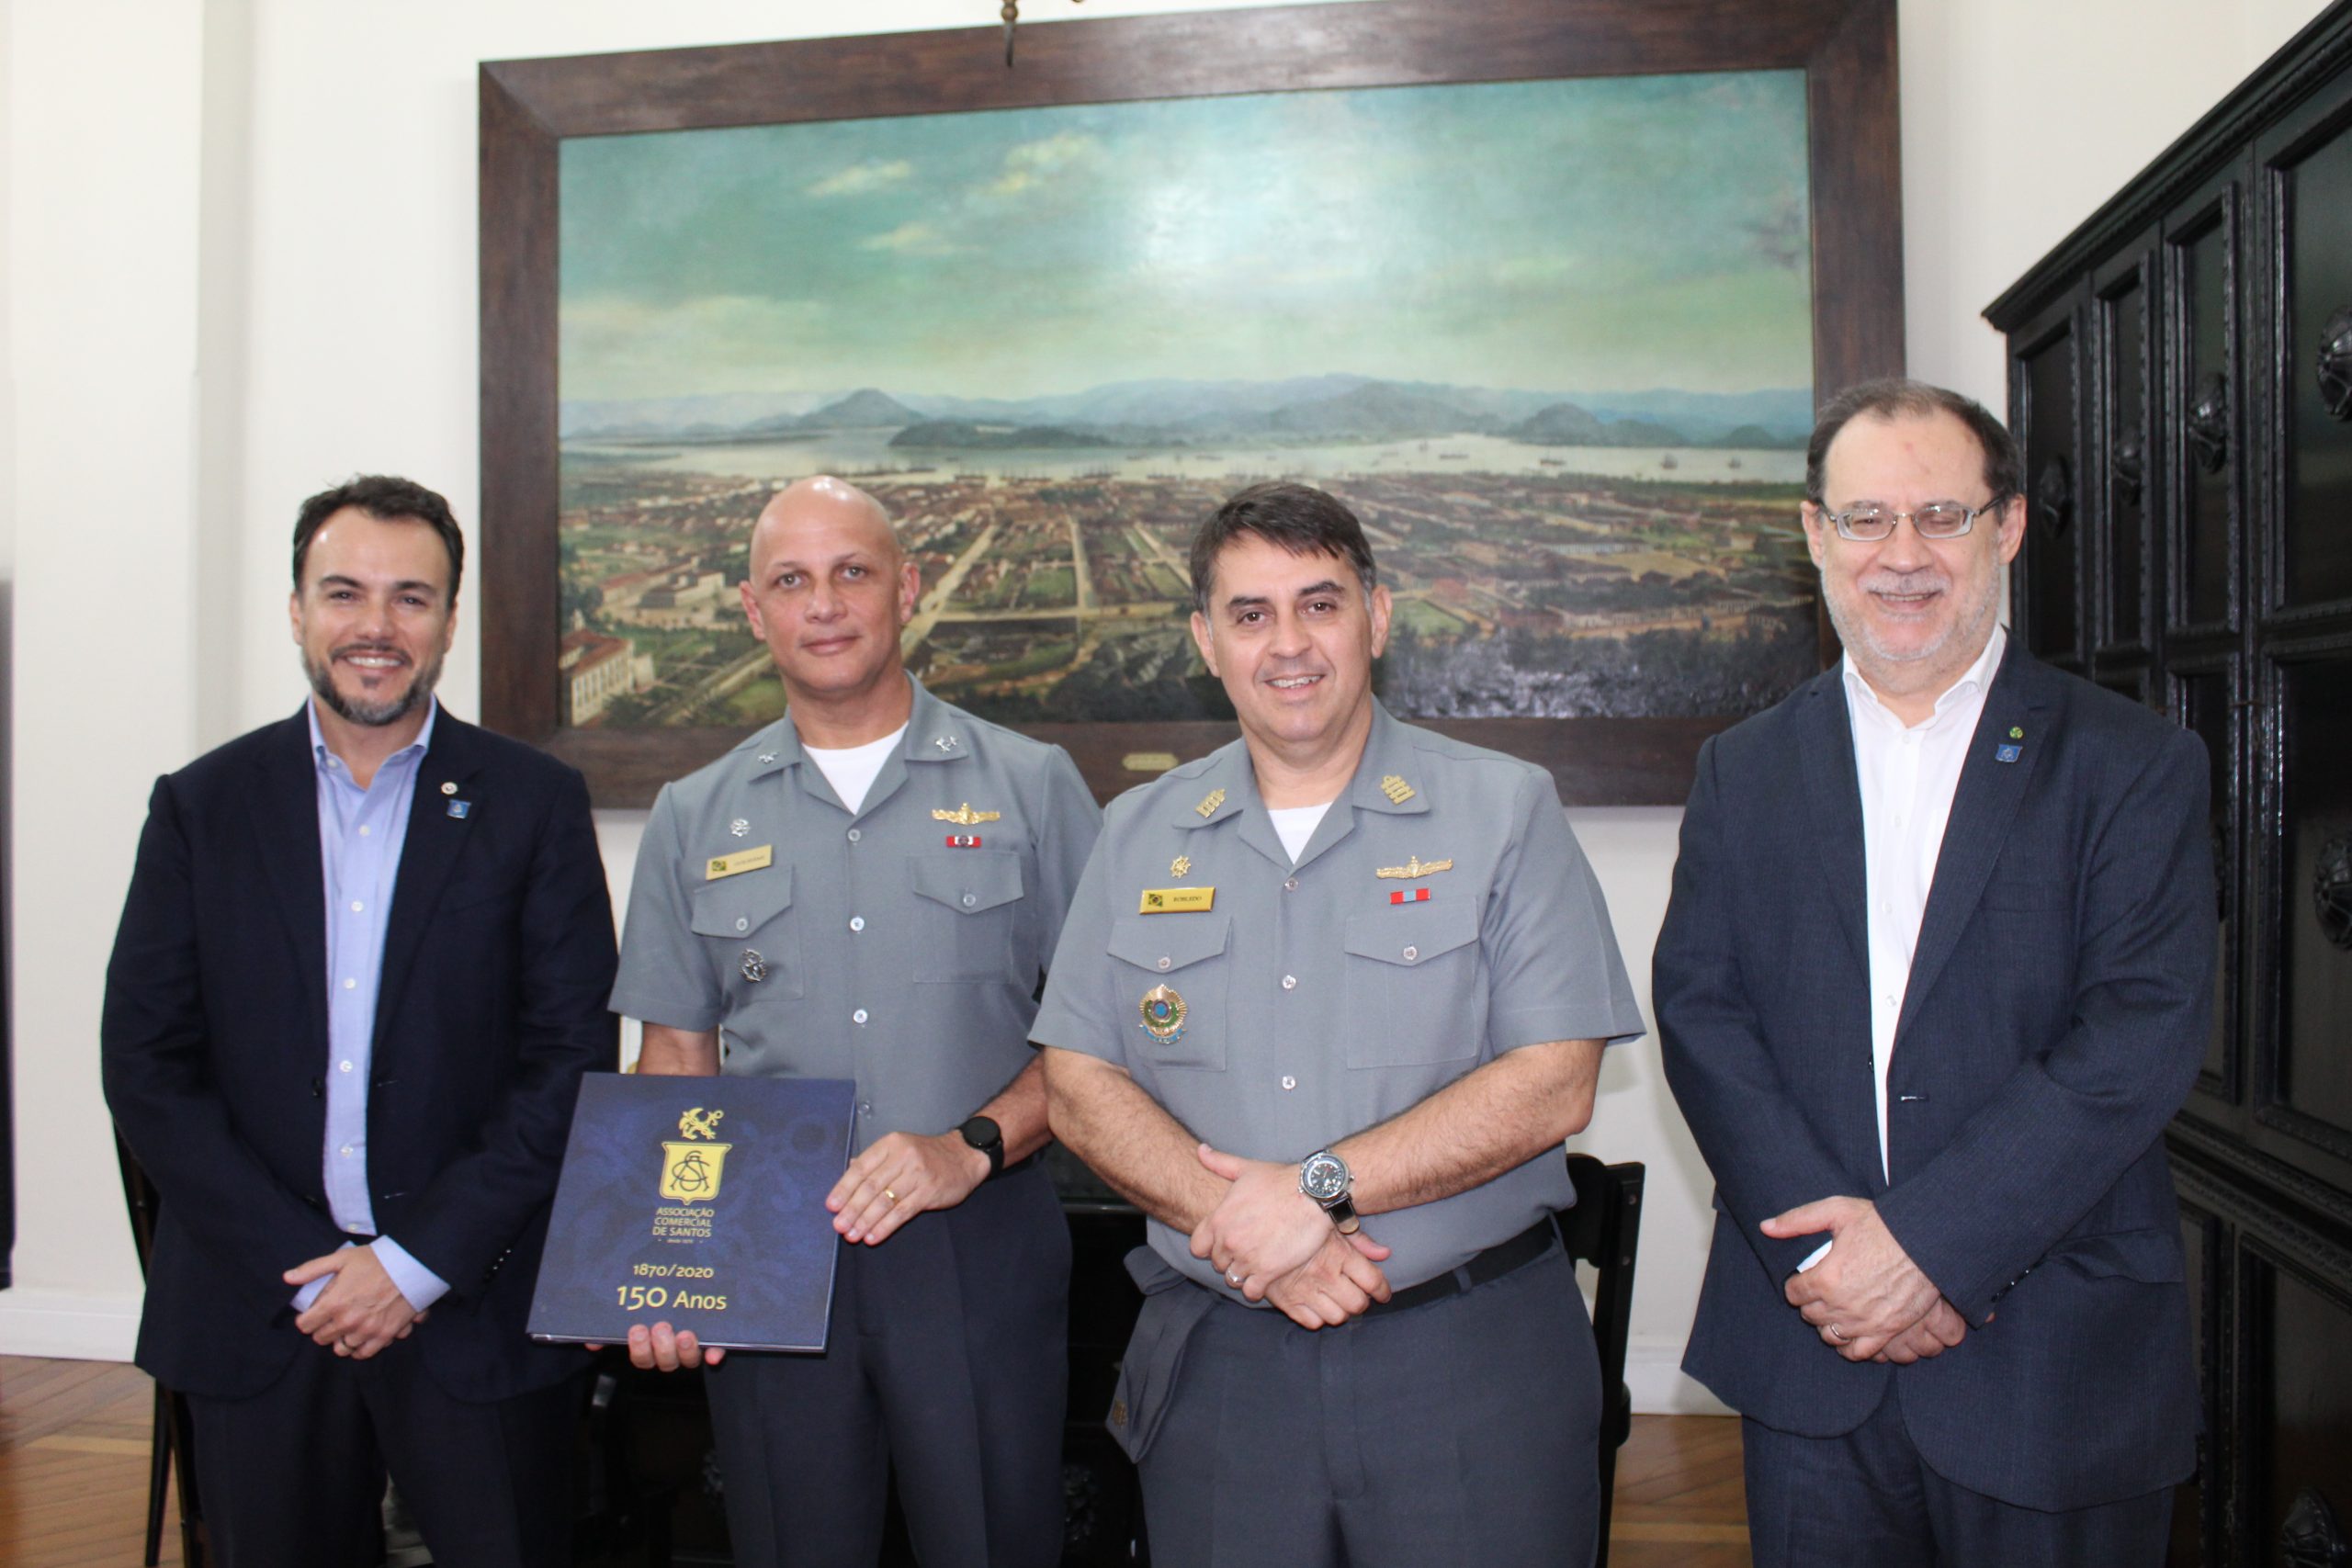 Almirante e Capitão dos Portos visitam a sede da ACS